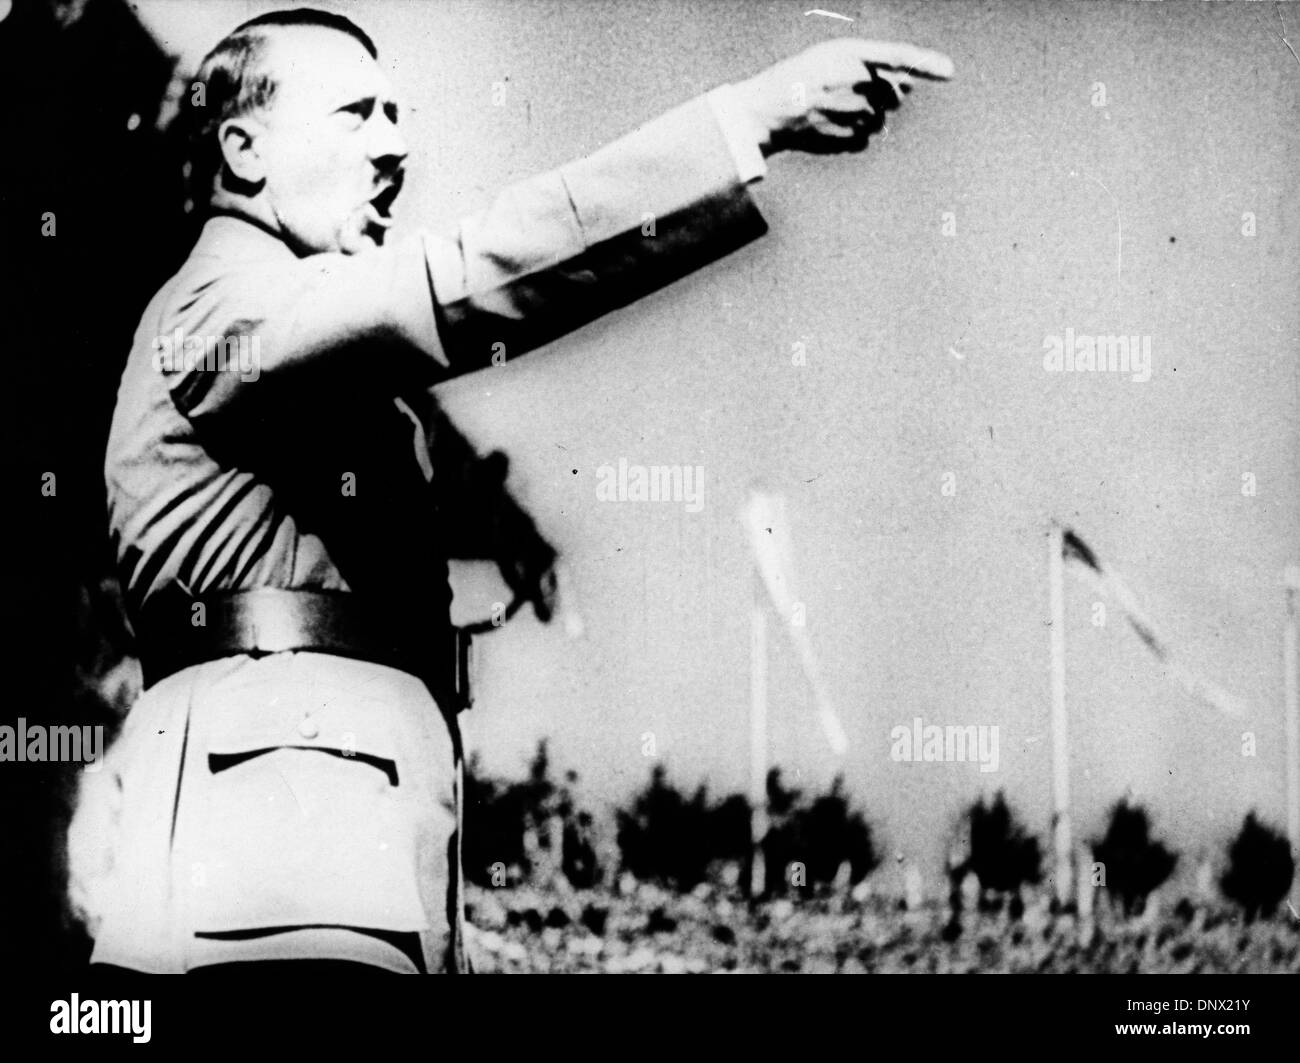 Le 15 février 1939 - Berlin, Allemagne - Adolf Hitler (20 avril 1889 ÐApril 30, 1945) a été le Führer und Reichskanzler (chancelier) et leader de l'Allemagne de 1933 à sa mort. Il était chef du parti national-socialiste des travailleurs allemands (NSDAP), mieux connu sous le nom de Parti nazi. Au sommet de son pouvoir, les armées de l'Allemagne nazie et ses puissances de l'axe dominé une grande partie de l'Europe du Banque D'Images